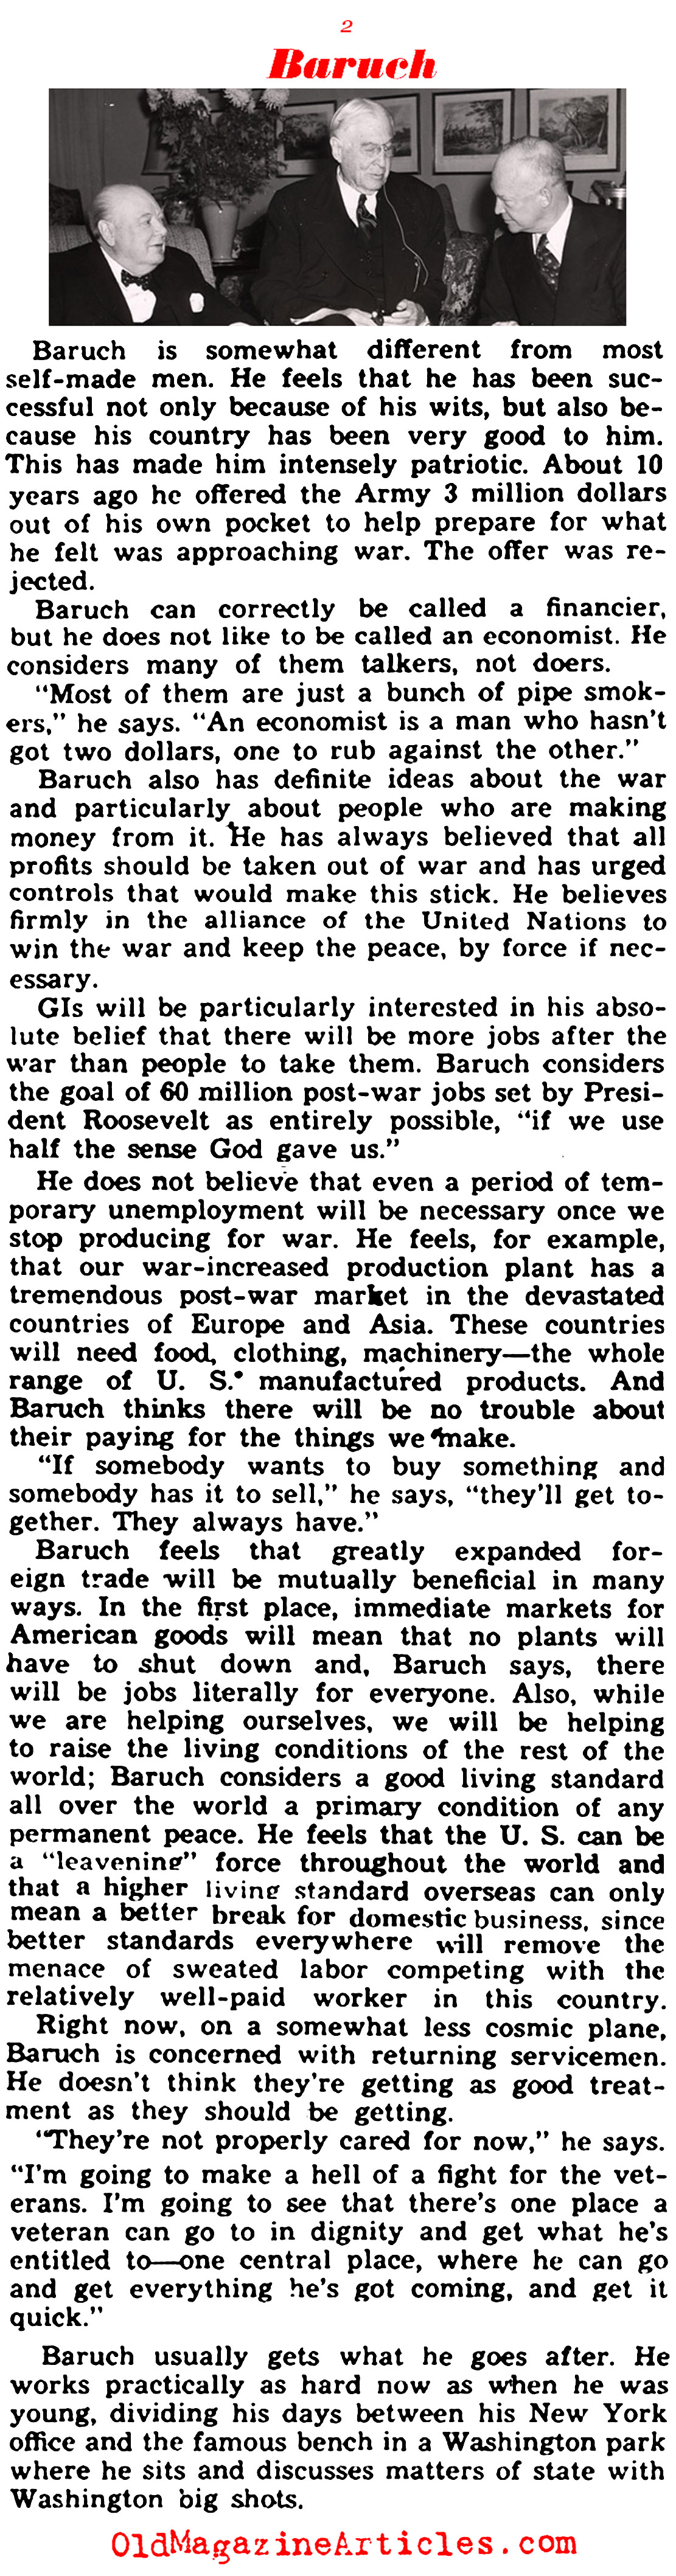 Bernard Baruch: Elder Statesman (Yank Magazine, 1945)